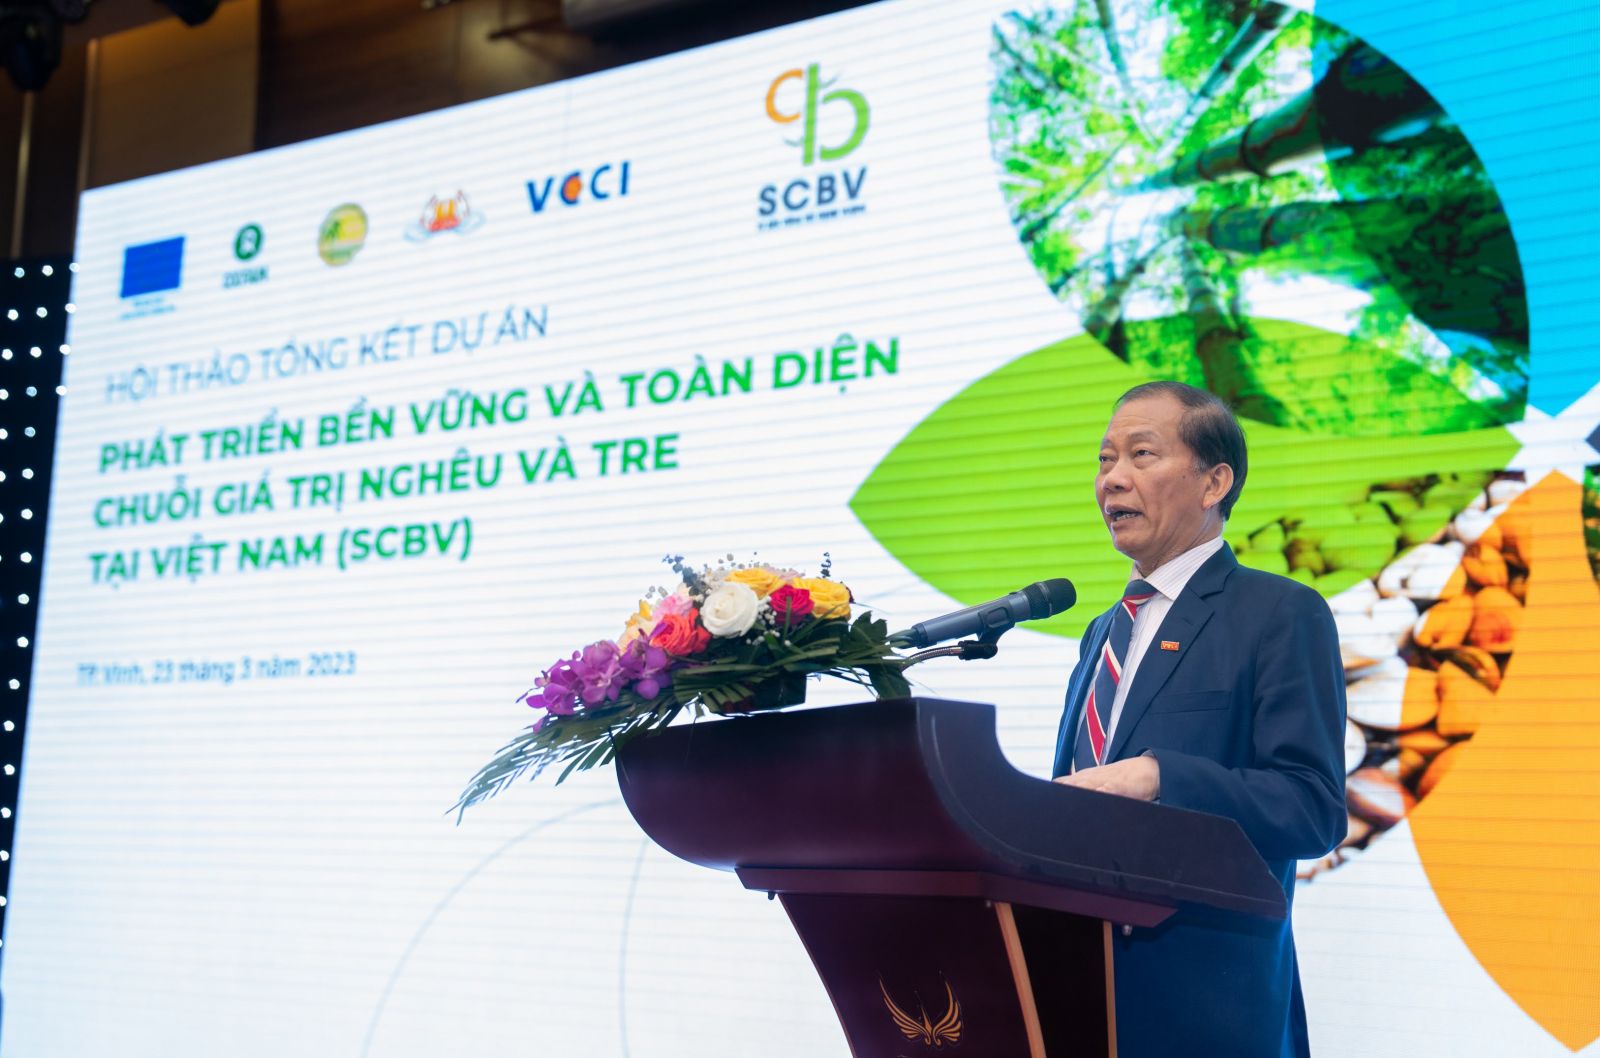 Ông Hoàng Quang Phòng, Phó Chủ tịch Liên đoàn Thương mại và Công nghiệp Việt Nam (VCCI) chia sẻ: “Dự án đã thúc đẩy các doanh nghiệp kinh doanh bao trùm, kinh doanh tạo tác động...